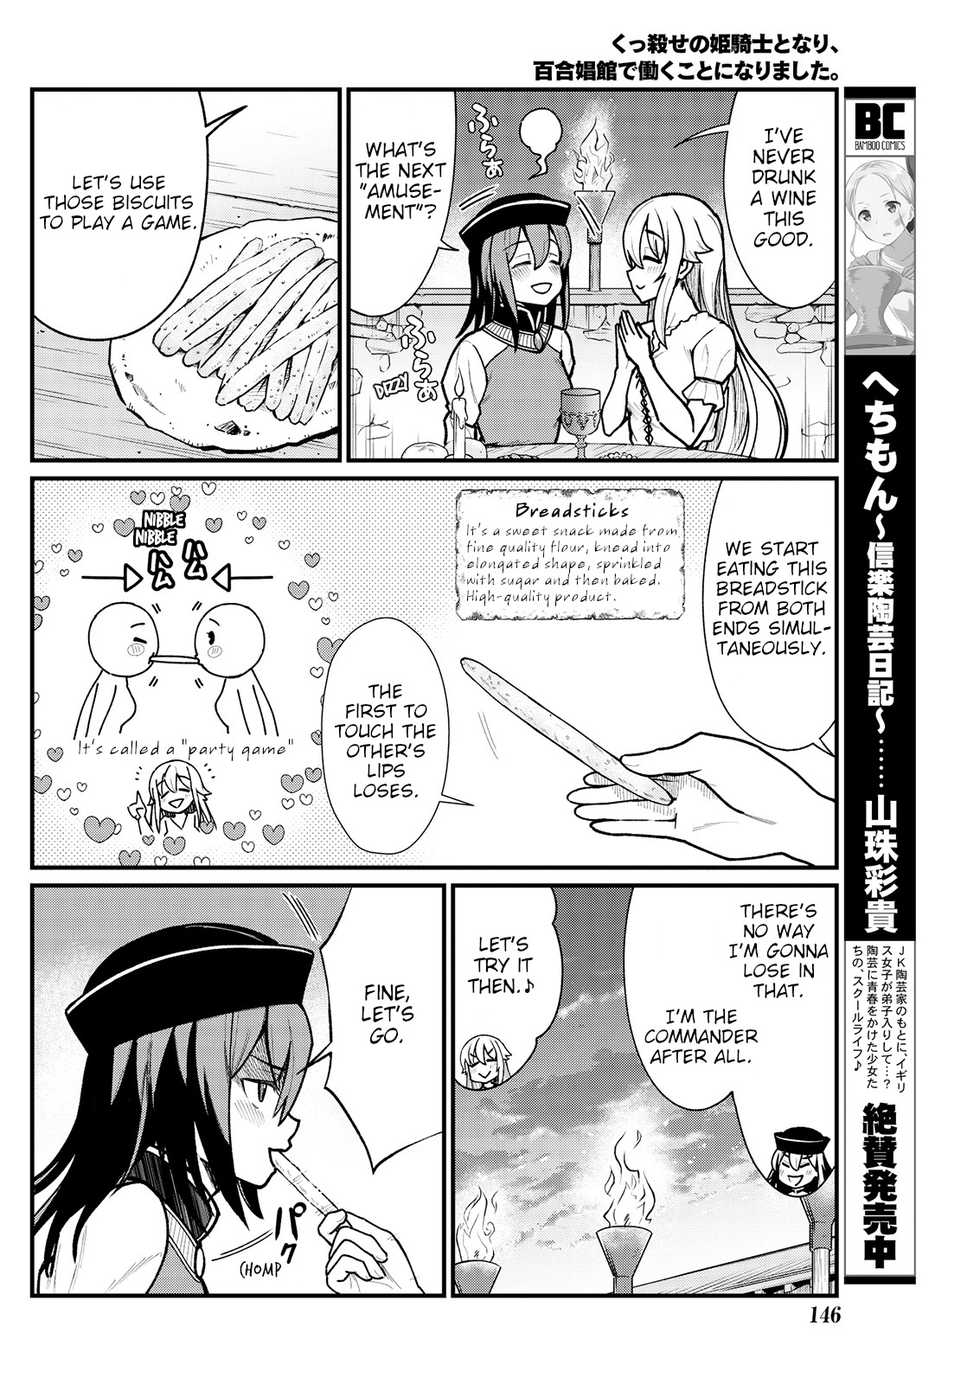 [Hinaki] Kukkorose no Himekishi to nari, Yuri Shoukan de Hataraku koto ni Narimashita. 5 | Becoming Princess Knight and Working at Yuri Brothel 5 [English] [Hurakano] - Page 14